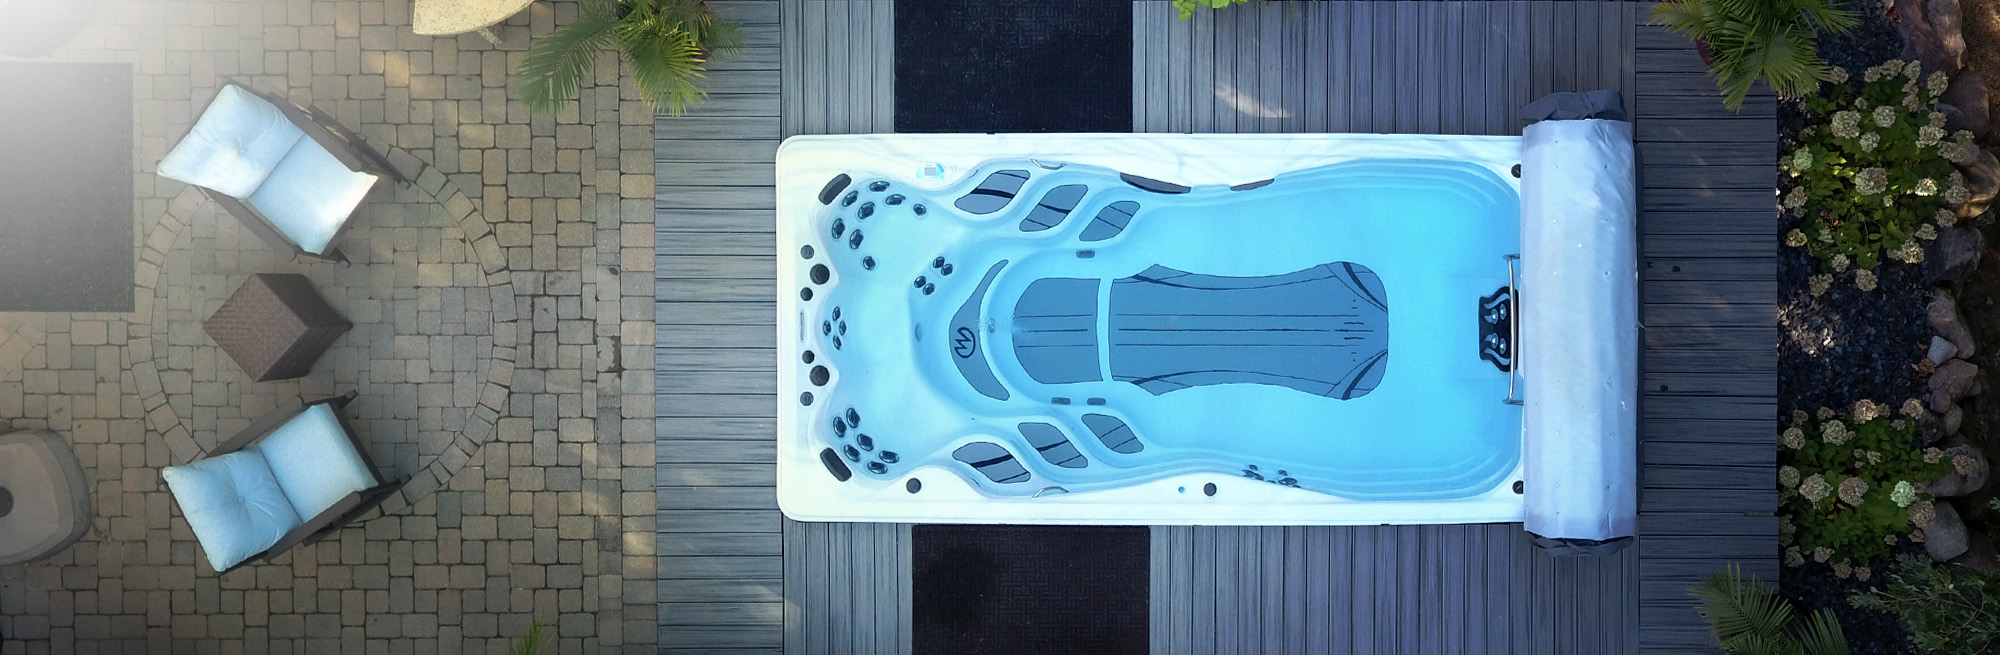 Dronebeeld van een zwemspa